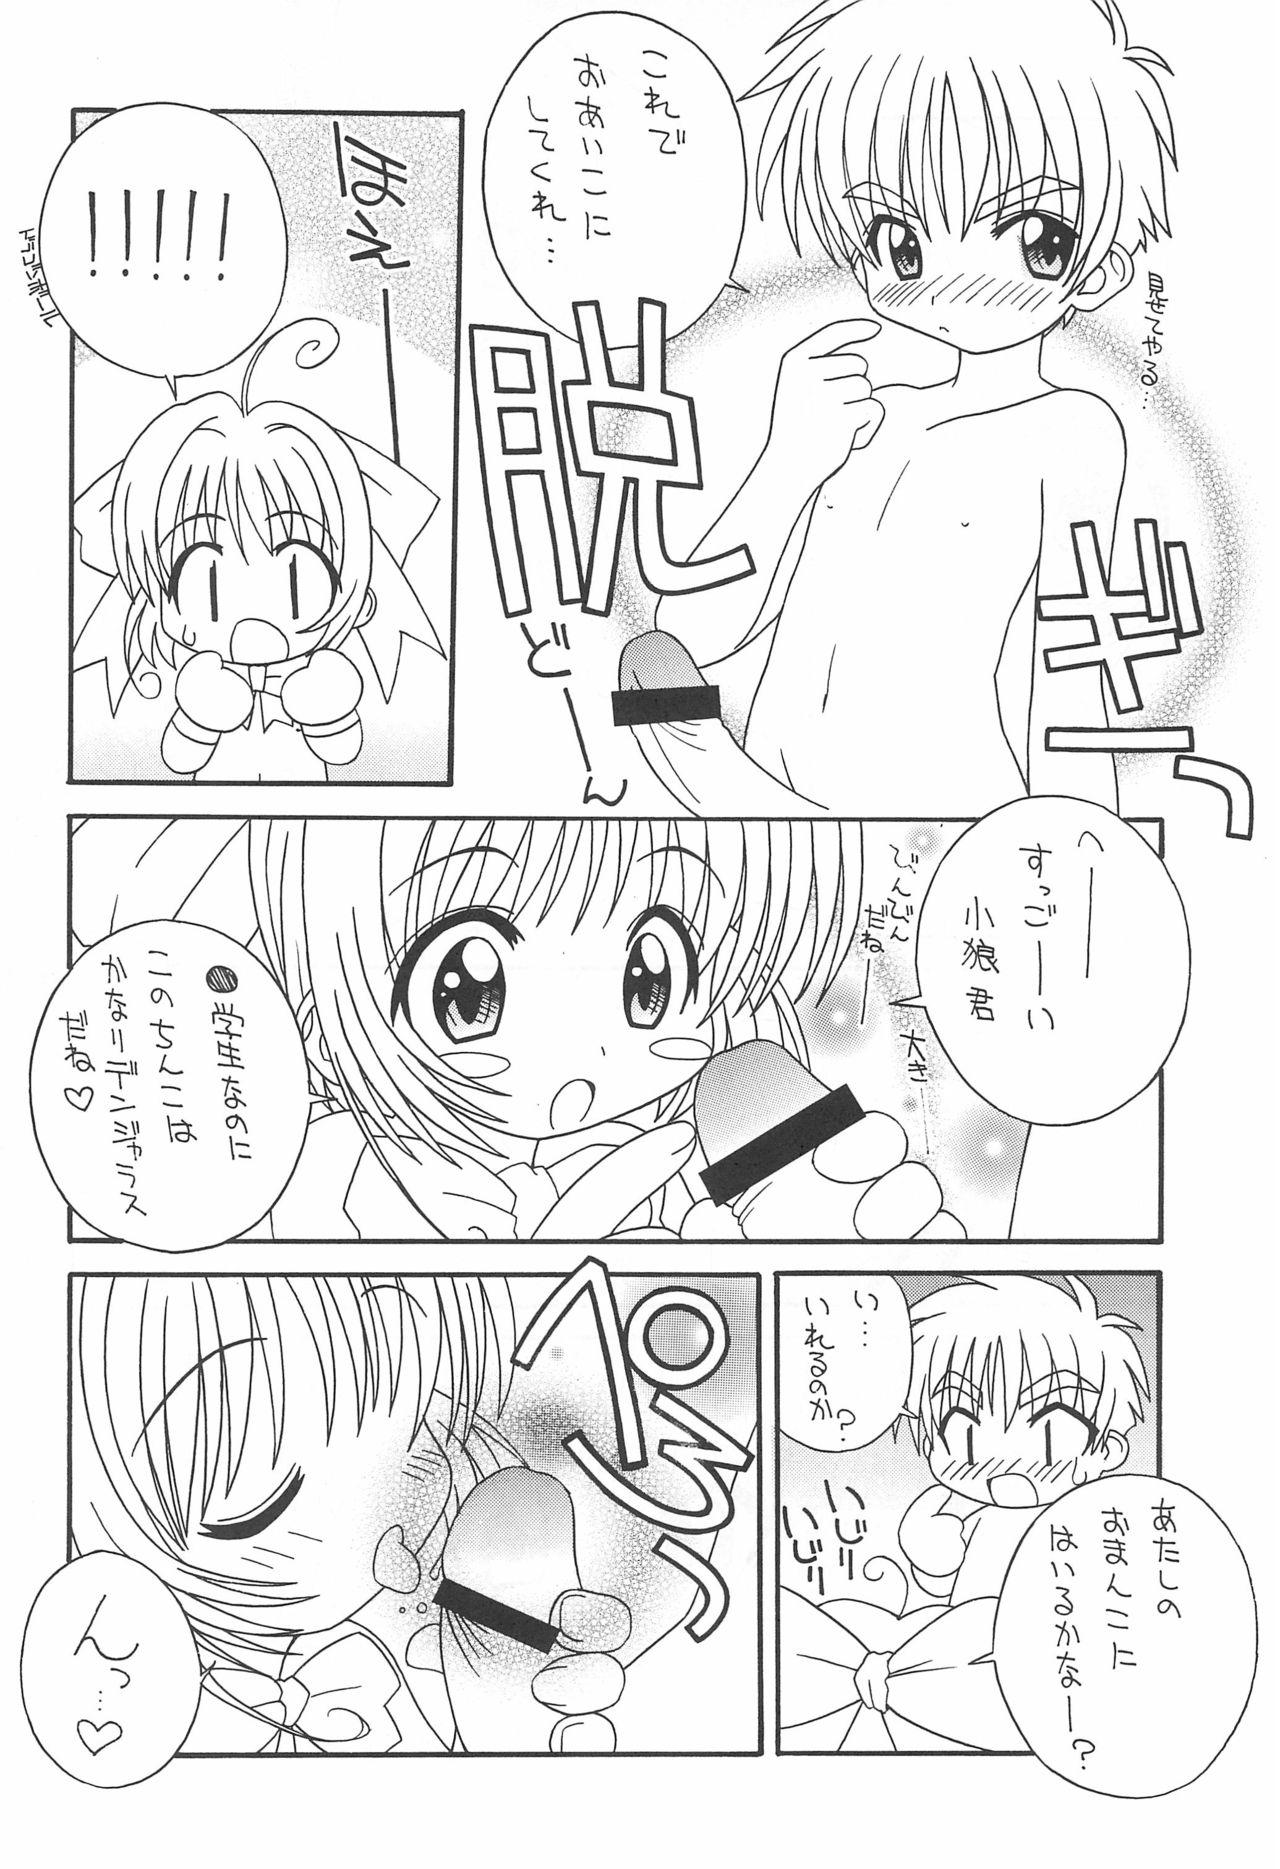 Girlnextdoor Soko da! Ninpou Youji Taikei no Jutsu 2nd - Cardcaptor sakura To heart Akihabara dennou gumi | cyber team in akihabara Fresh - Page 8